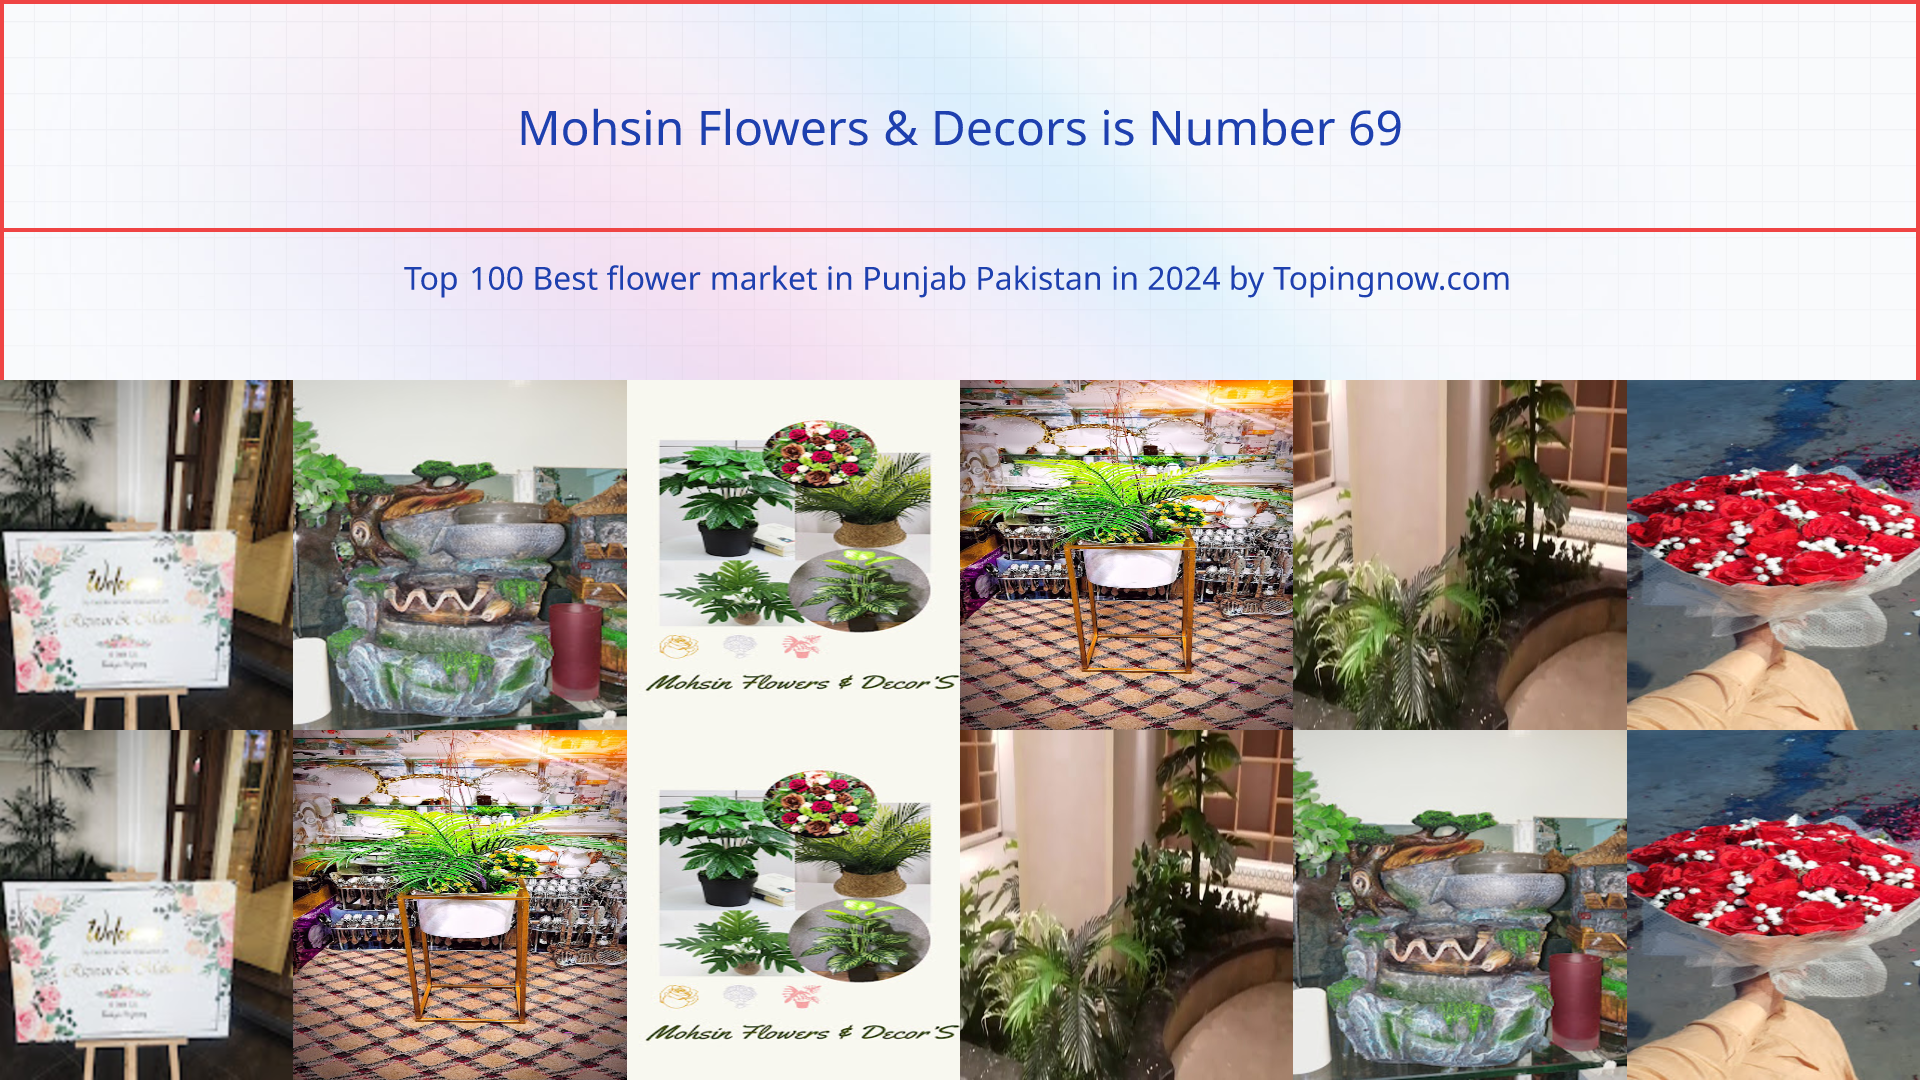 Mohsin Flowers & Decors: Top 100 Best flower market in Punjab Pakistan in 2024